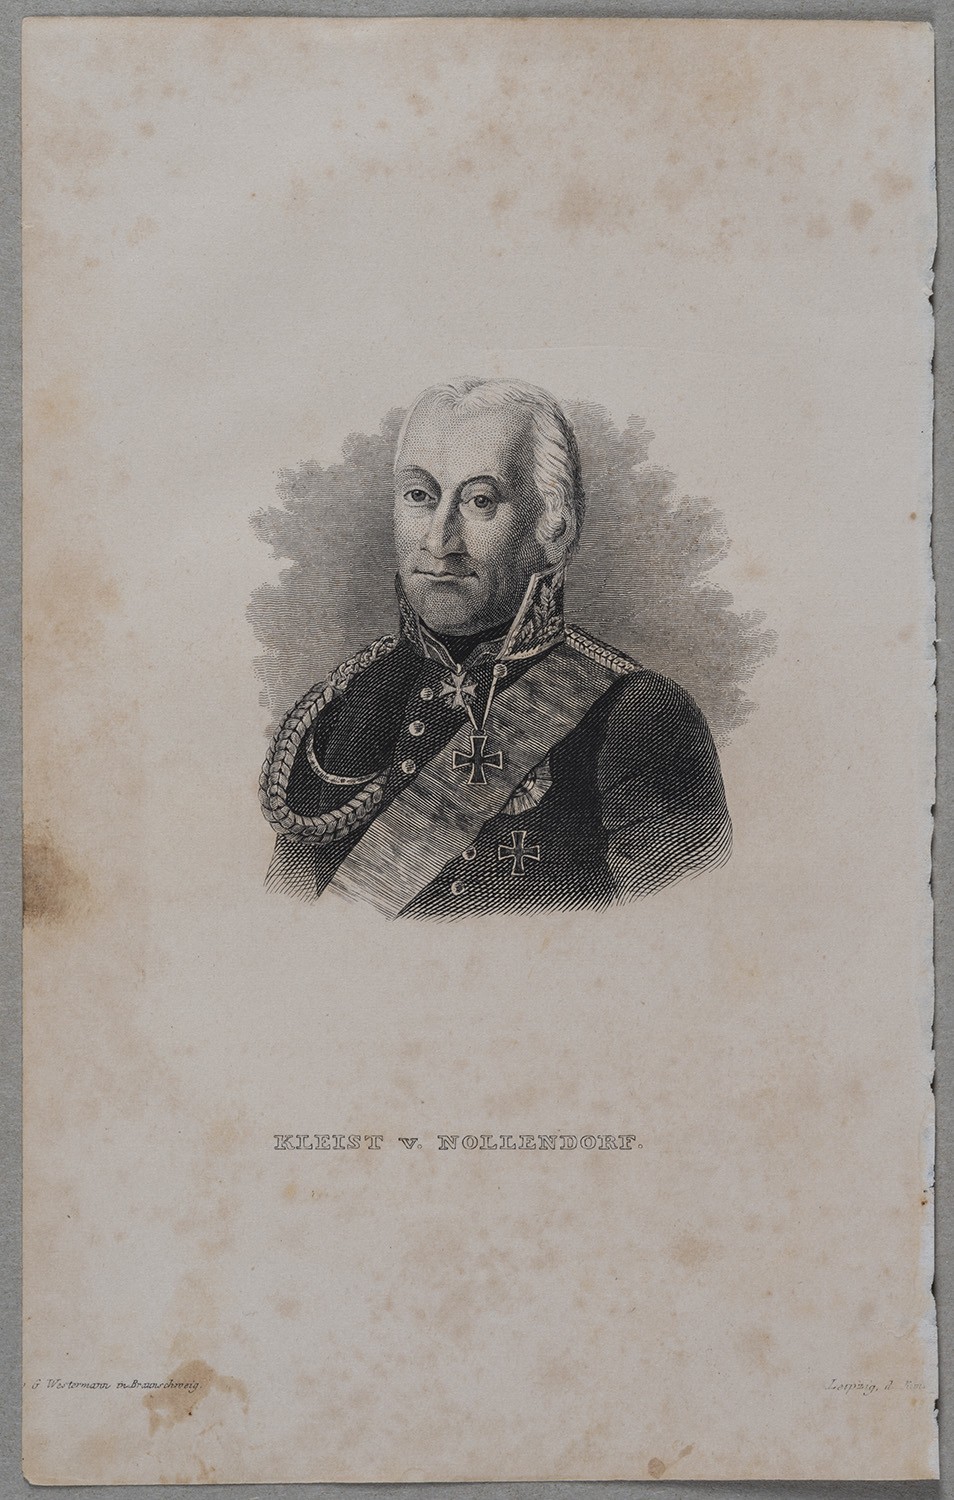 Kleist von Nollendorf, Friedrich Graf (1762-1823), preuß. Generalfeldmarschall (Landesgeschichtliche Vereinigung für die Mark Brandenburg e.V., Archiv CC BY)